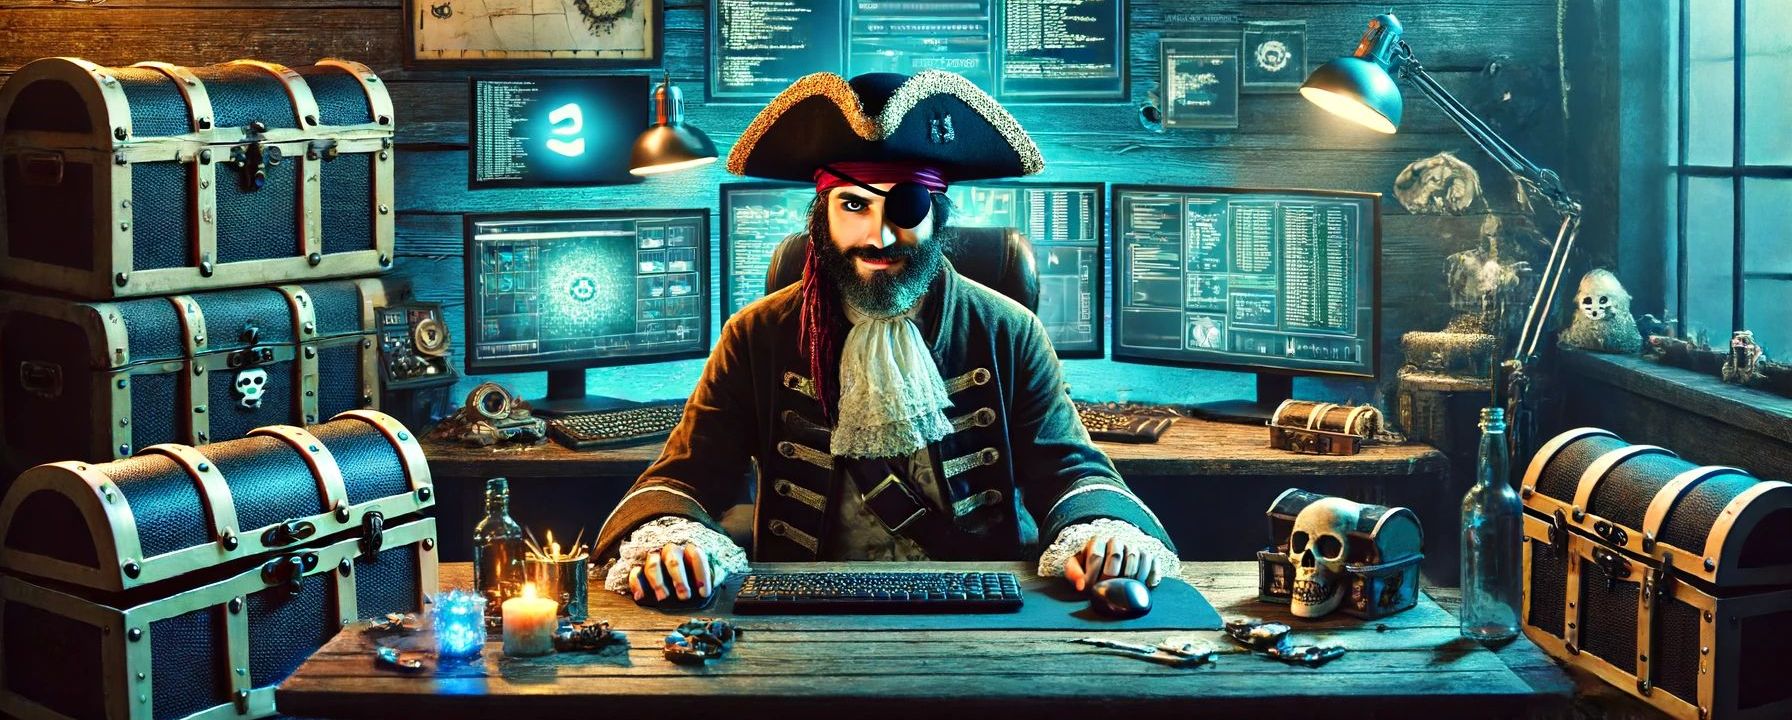 Смягчено наказание за пиратство